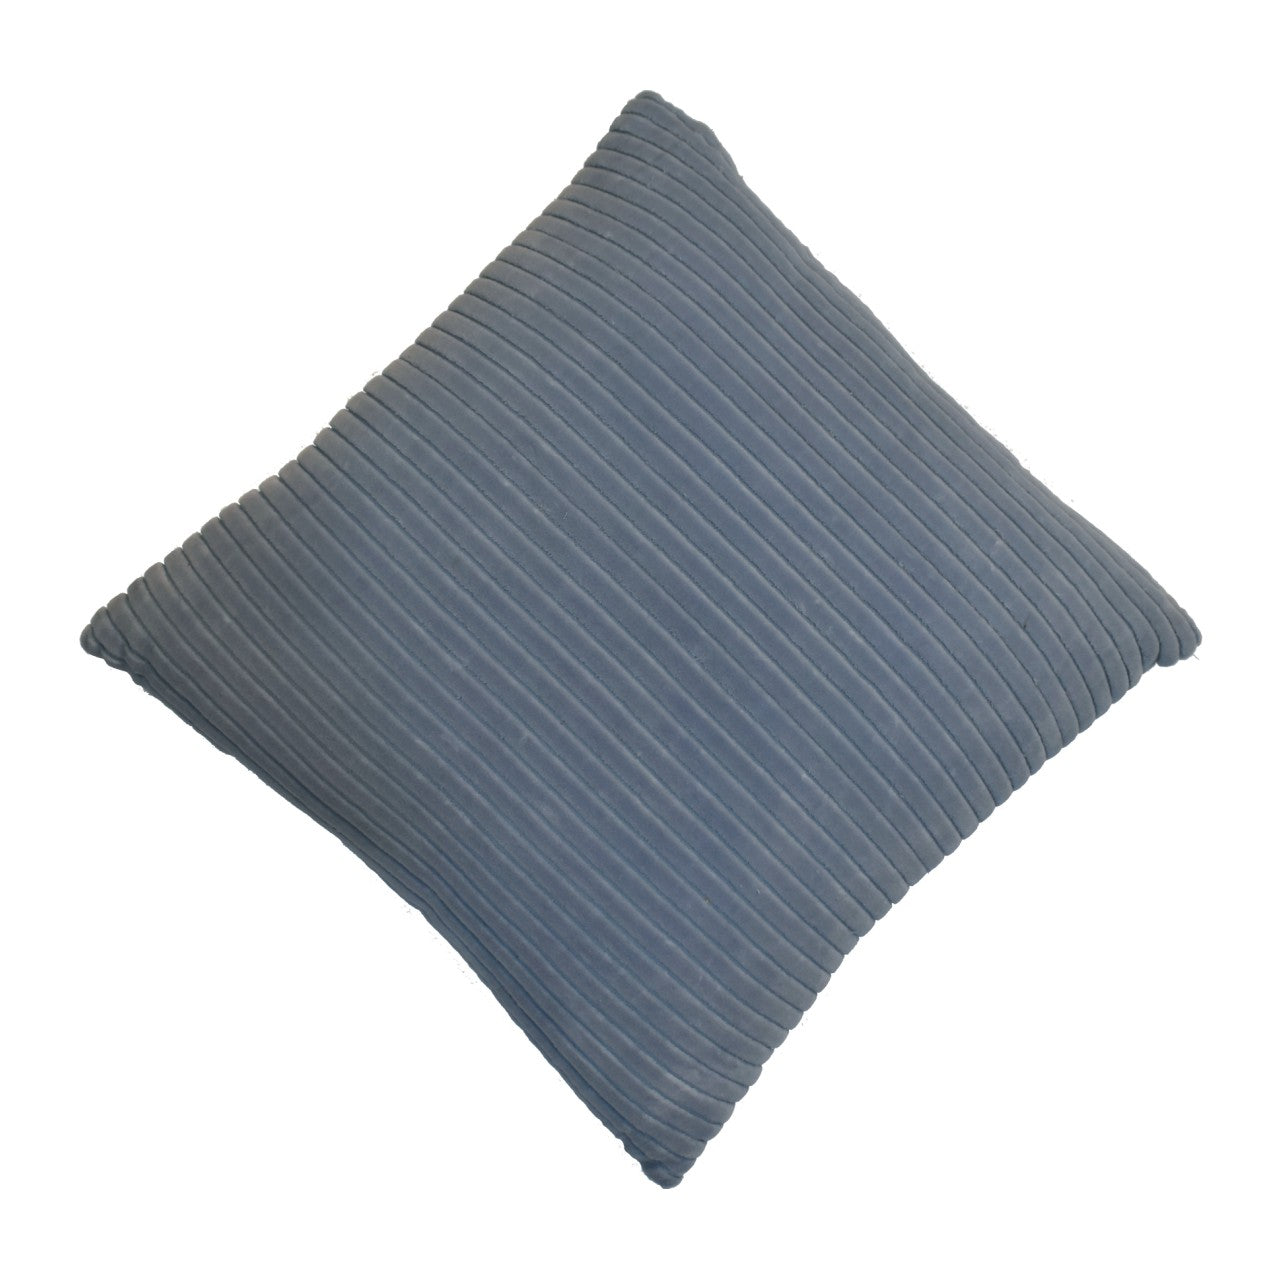 ribbed grey cushion set of 2